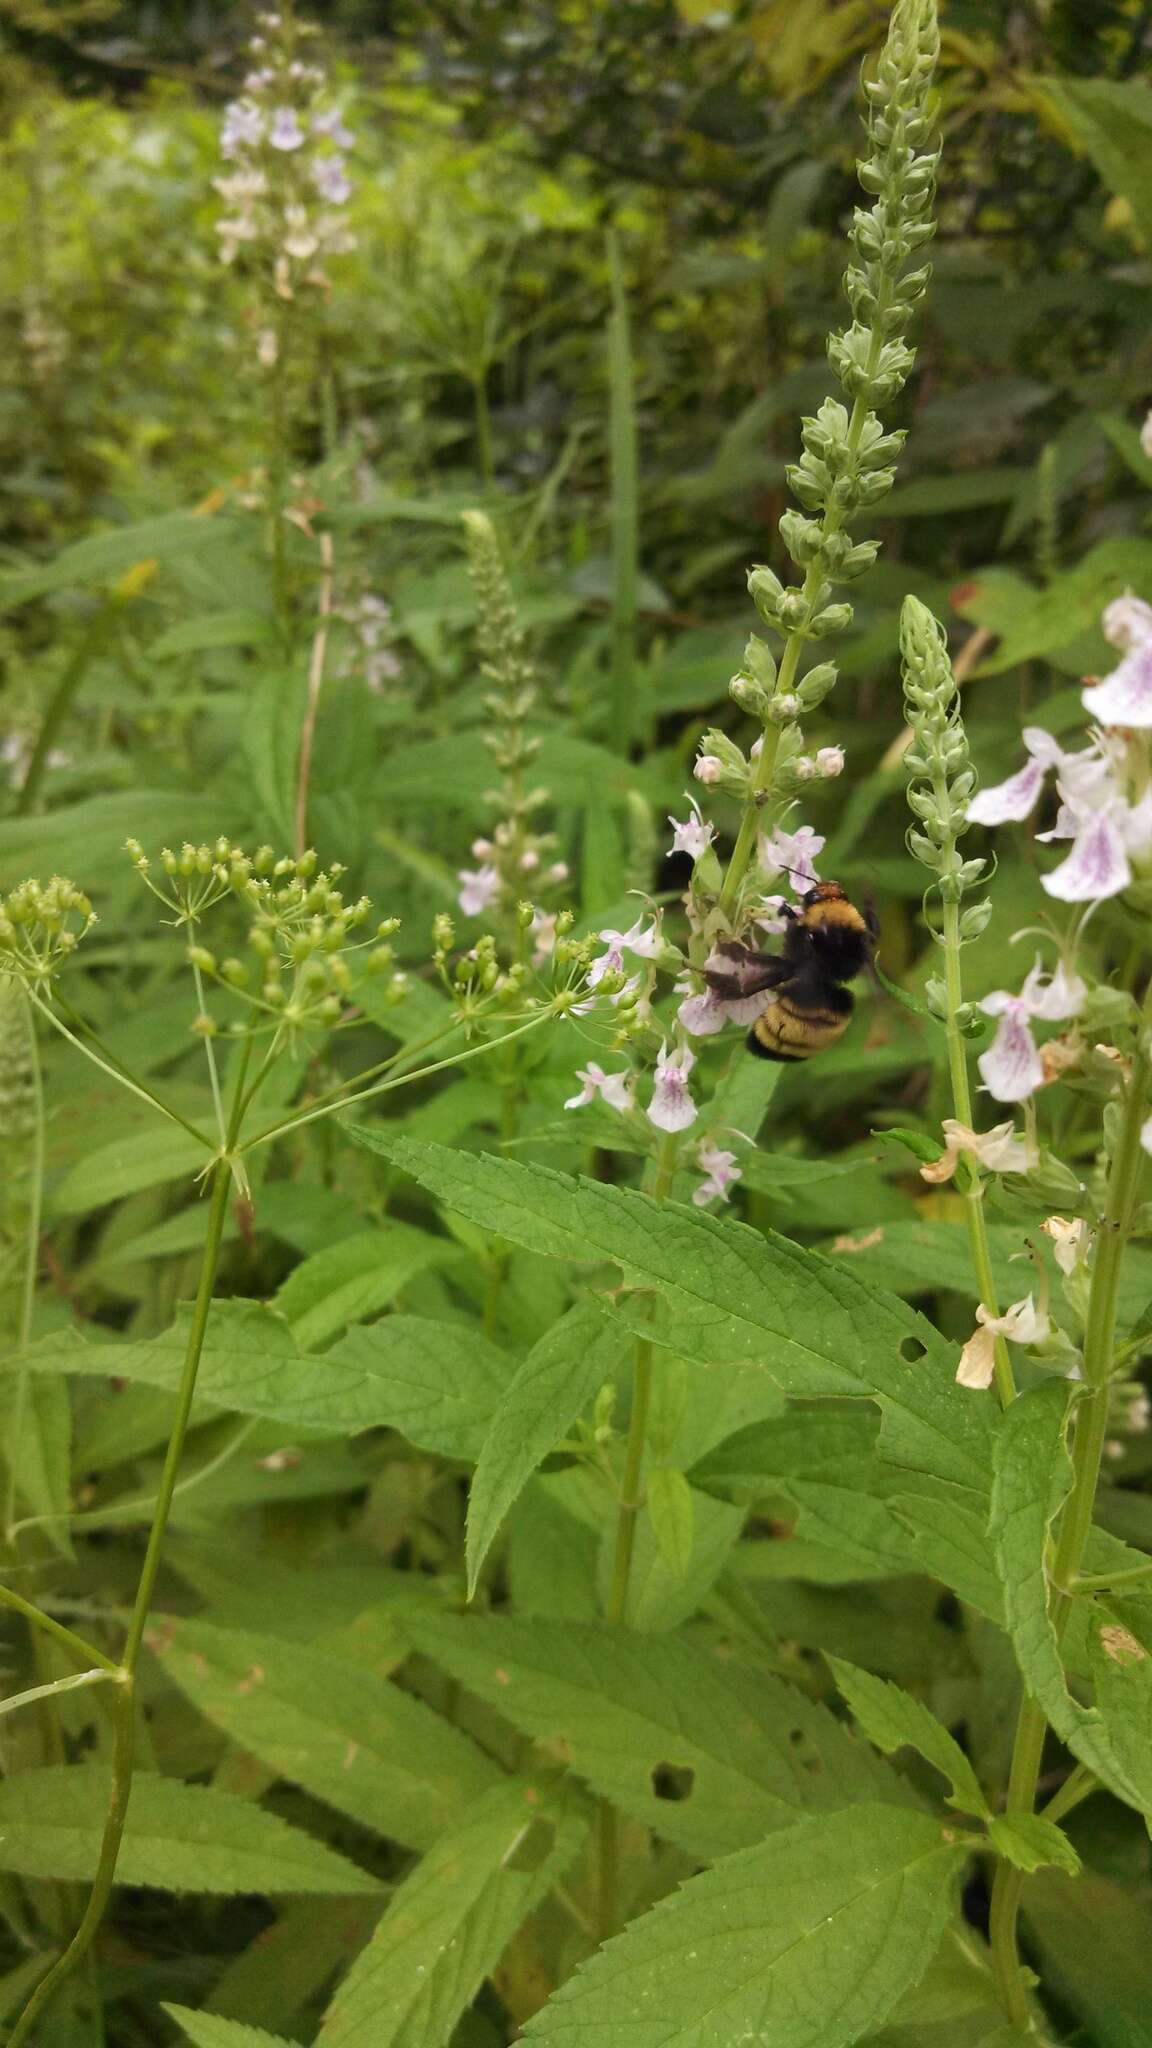 Image of American Bumblebee